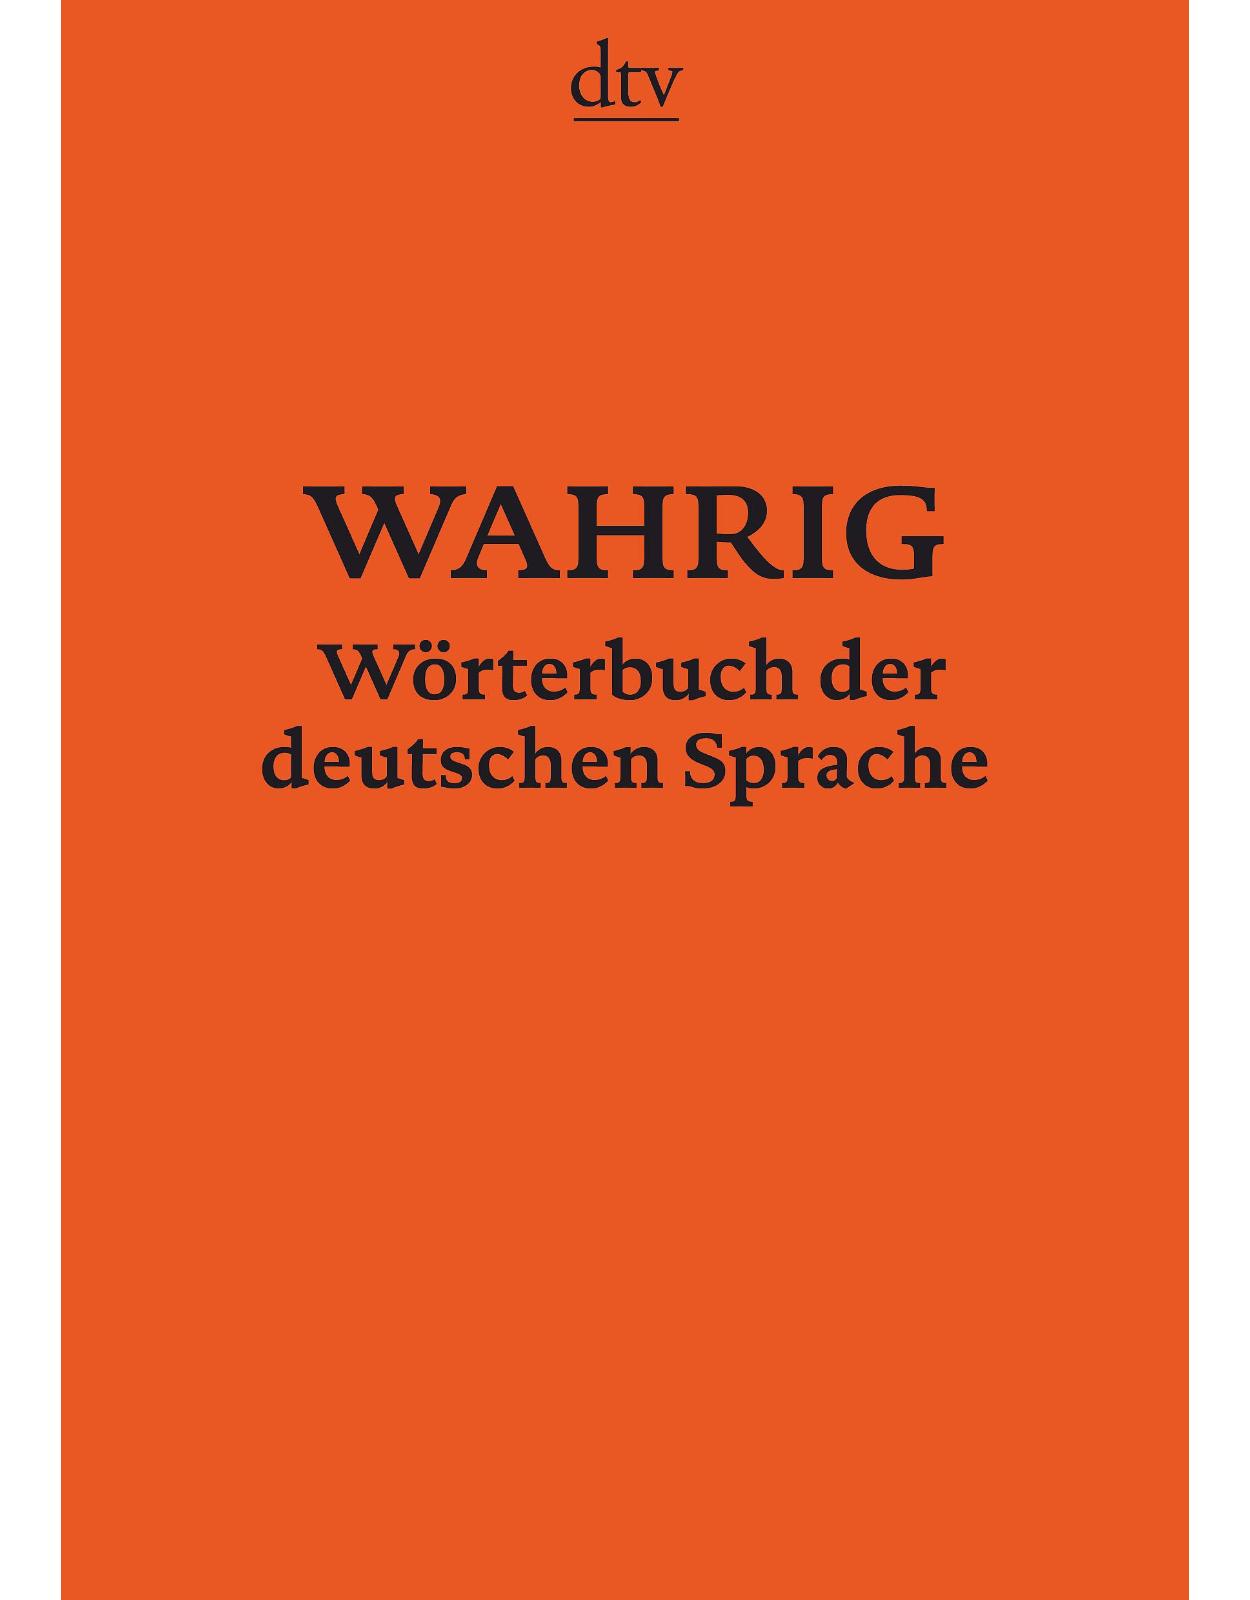 Wahrig Worterbucher: Worterbuch der deutschen Sprache (DTV-Wahrig)